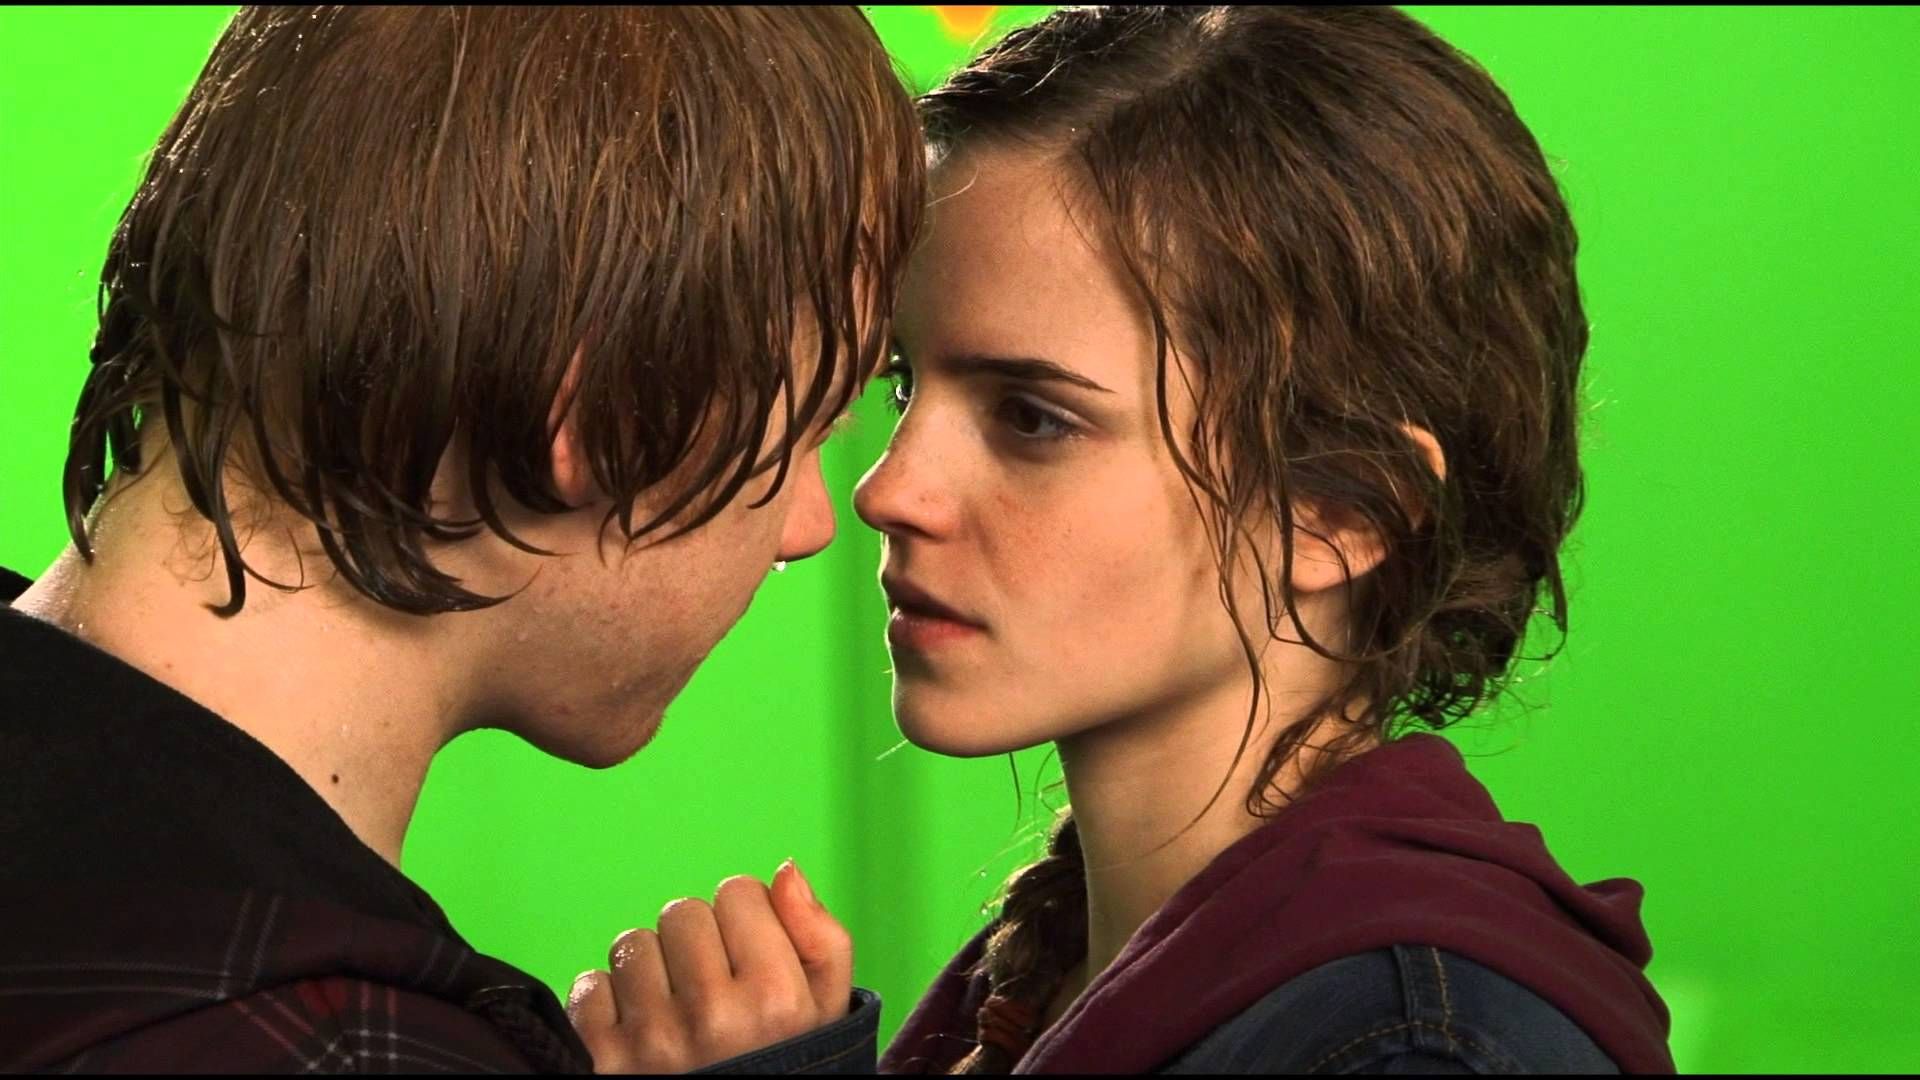 Cena do filme Harry Potter e as Relíquias da Morte: Parte 2. A cena nos bastidores do filme mostra a tela verde ao fundo, e no foco estã um close-up de Rony e Hermione, depois da gravação do beijo deles. Os dois são brancos, Rony é ruivo e Hermione tem o cabelo castanho claro. Eles estão molhados e se olham nos olhos.